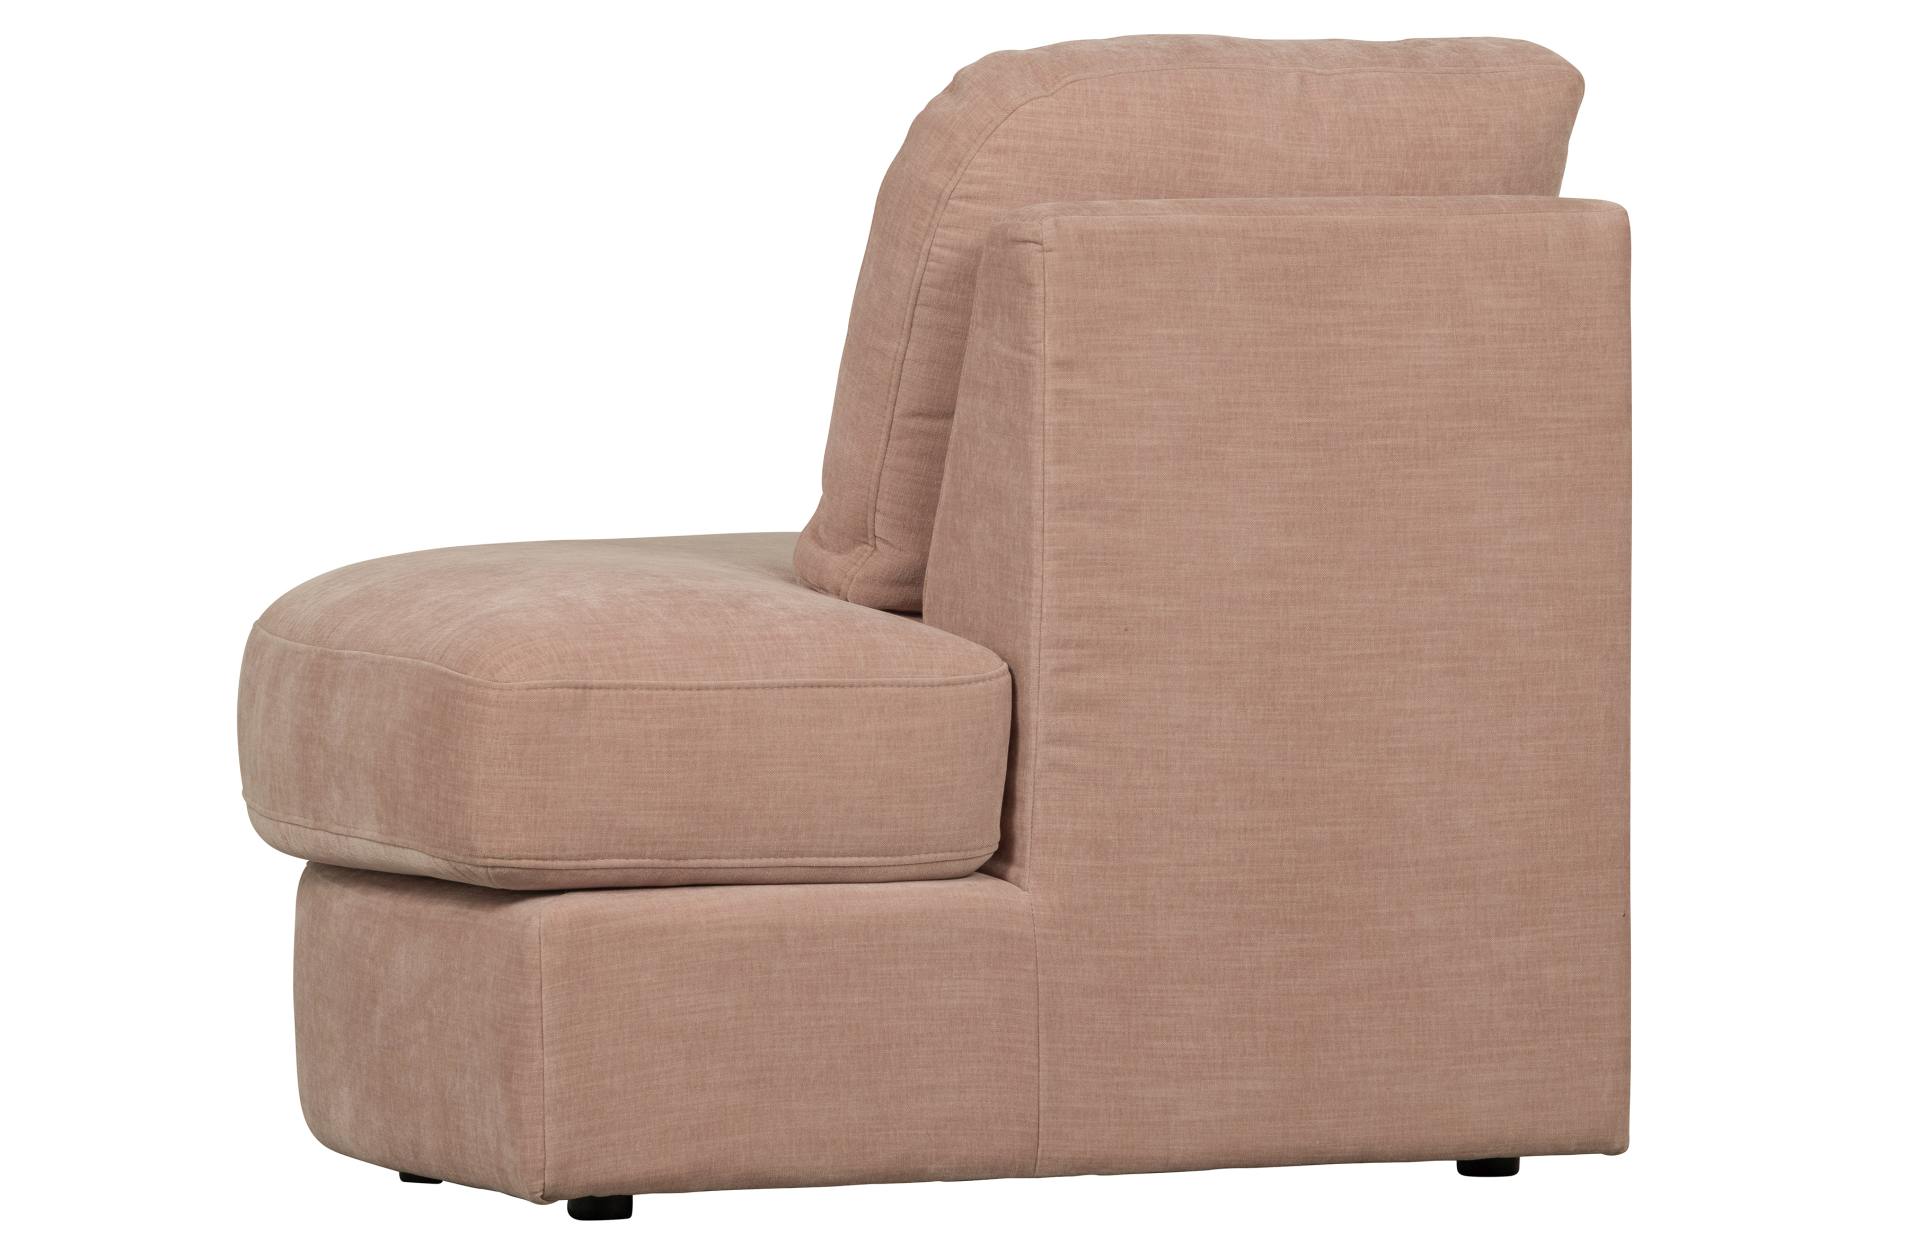 Das Modulsofa Family überzeugt mit seinem modernen Design. Das 1-Seat Eck Element mit der Ausführung Rechts wurde aus Gewebe-Stoff gefertigt, welcher einen einen rosa Farbton besitzen. Das Gestell ist aus Metall und hat eine schwarze Farbe. Das Element ha